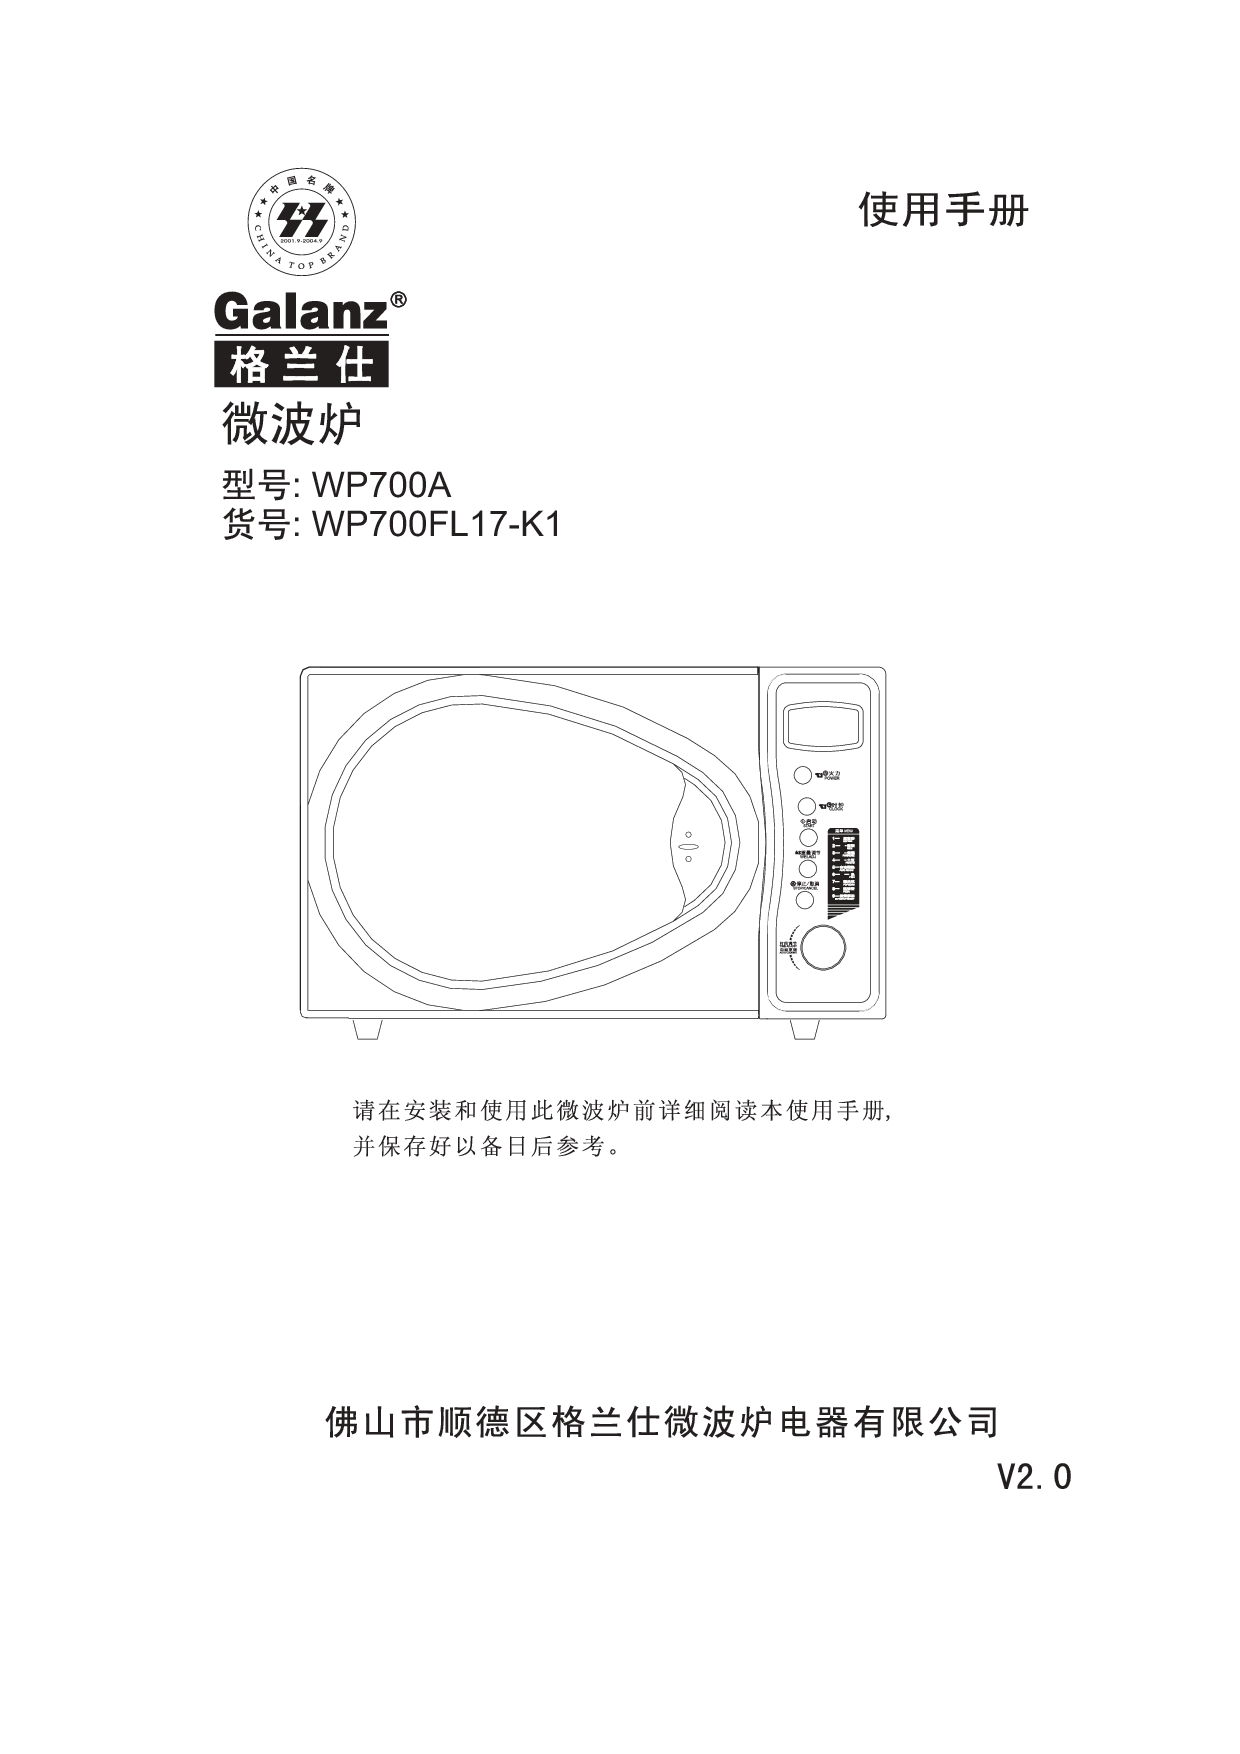 格兰仕 Galanz WP700FL17-K1 使用手册 封面